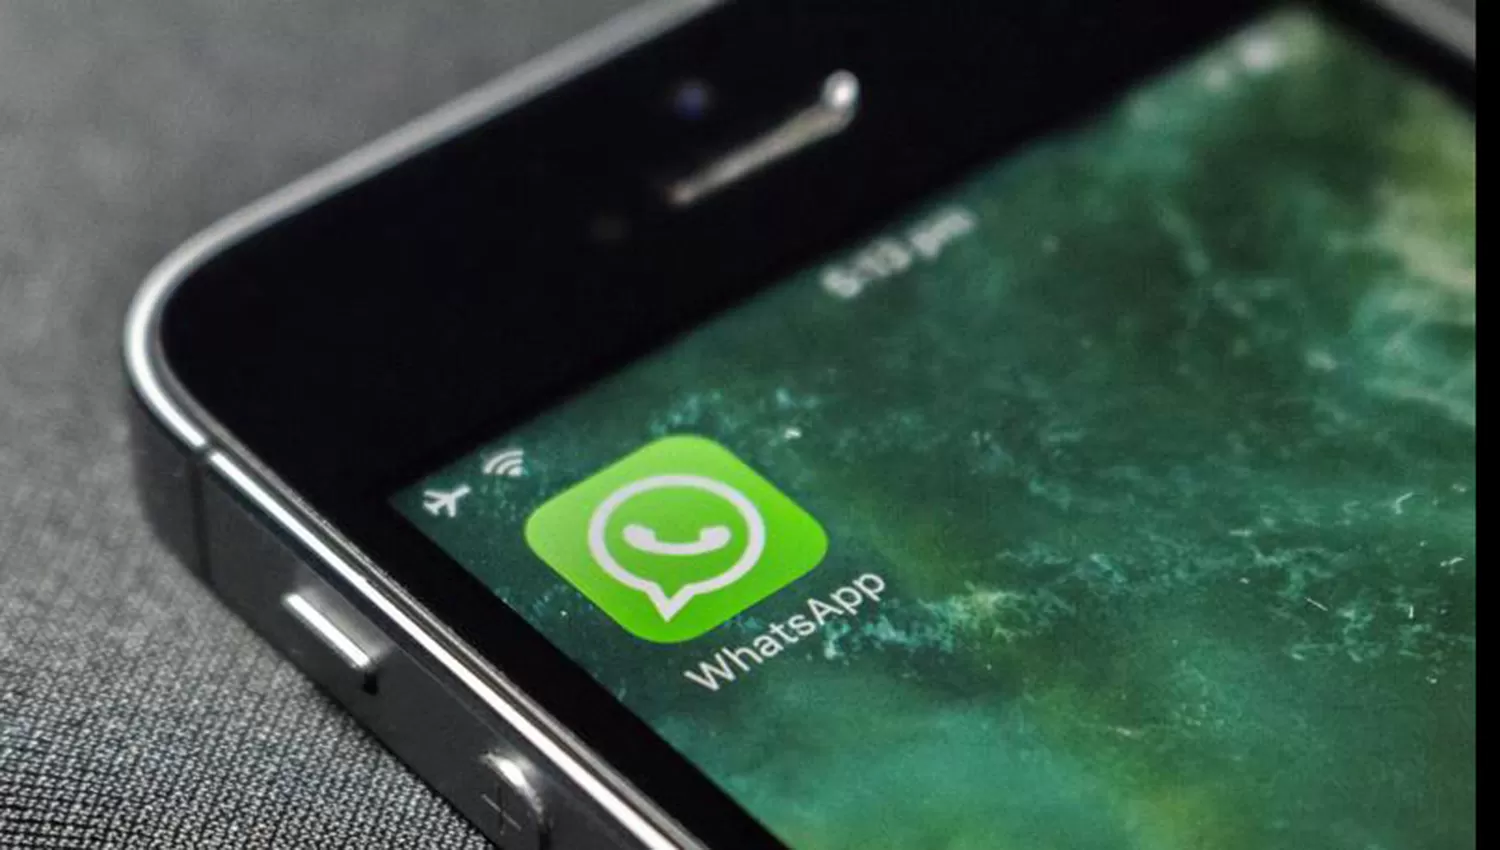 ¿Whatsapp puede dejar de ser gratis? Qué dice la letra chica de la aplicación